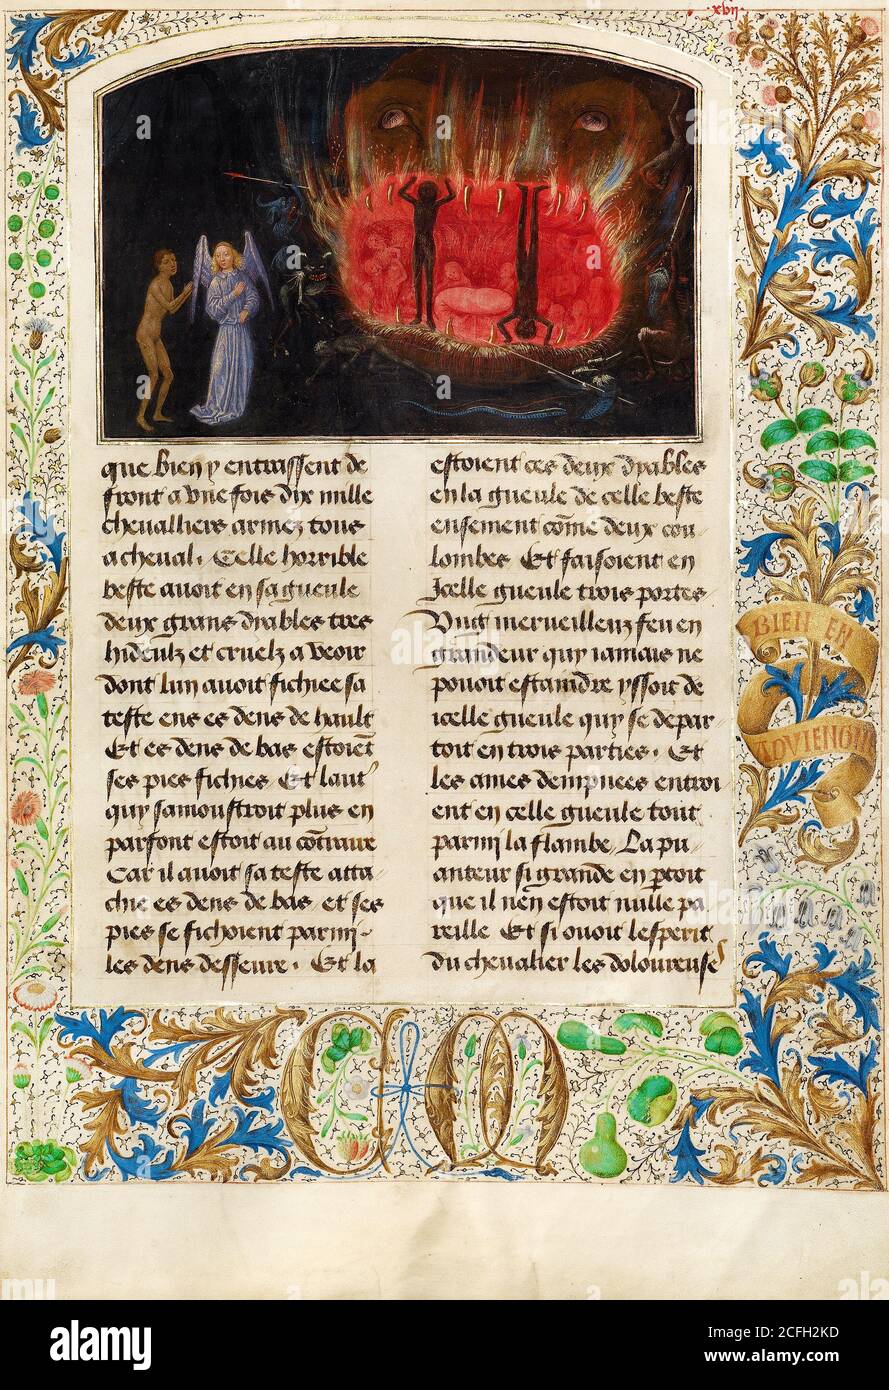 Simon Marmion, la Bestia Acheron 1475 Tempera, oro, tinta sobre pergamino, el Museo J. Paul Getty, los Ángeles, EE.UU. Foto de stock